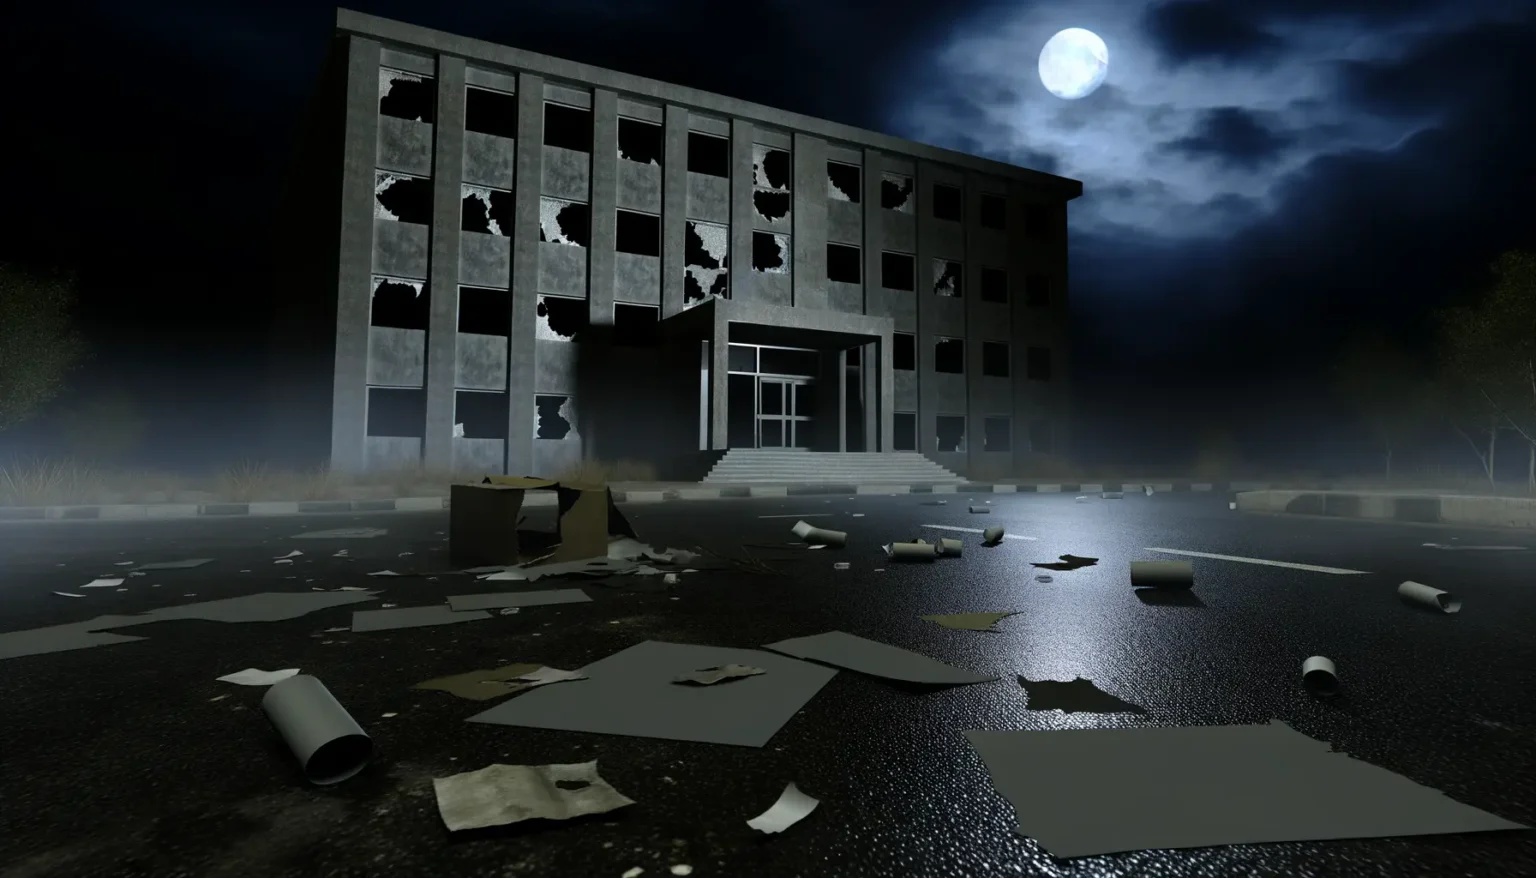 Ein verlassenes, zerstörtes Gebäude bei Nacht, mit zerschlagenen Fenstern und Trümmerteilen auf der Straße davor. Im Hintergrund ist ein voller Mond sichtbar, der durch Wolken am Nachthimmel scheint.